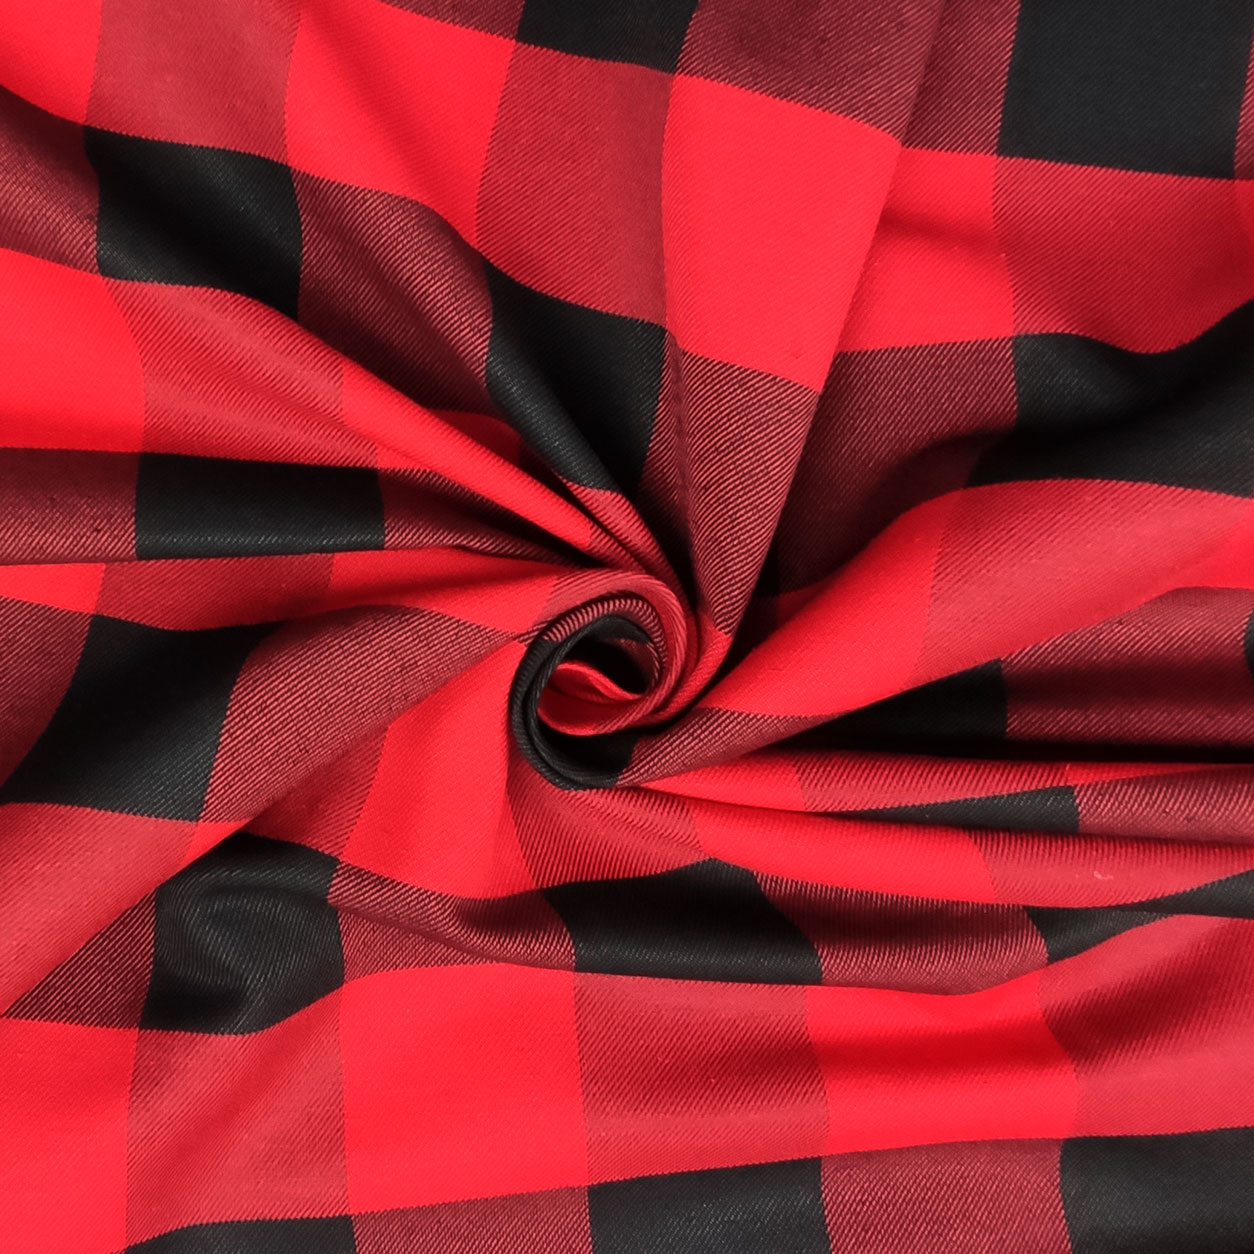 tessuto-arredamento-con-fantasia-boscaiolo-in-rosso-e-nero